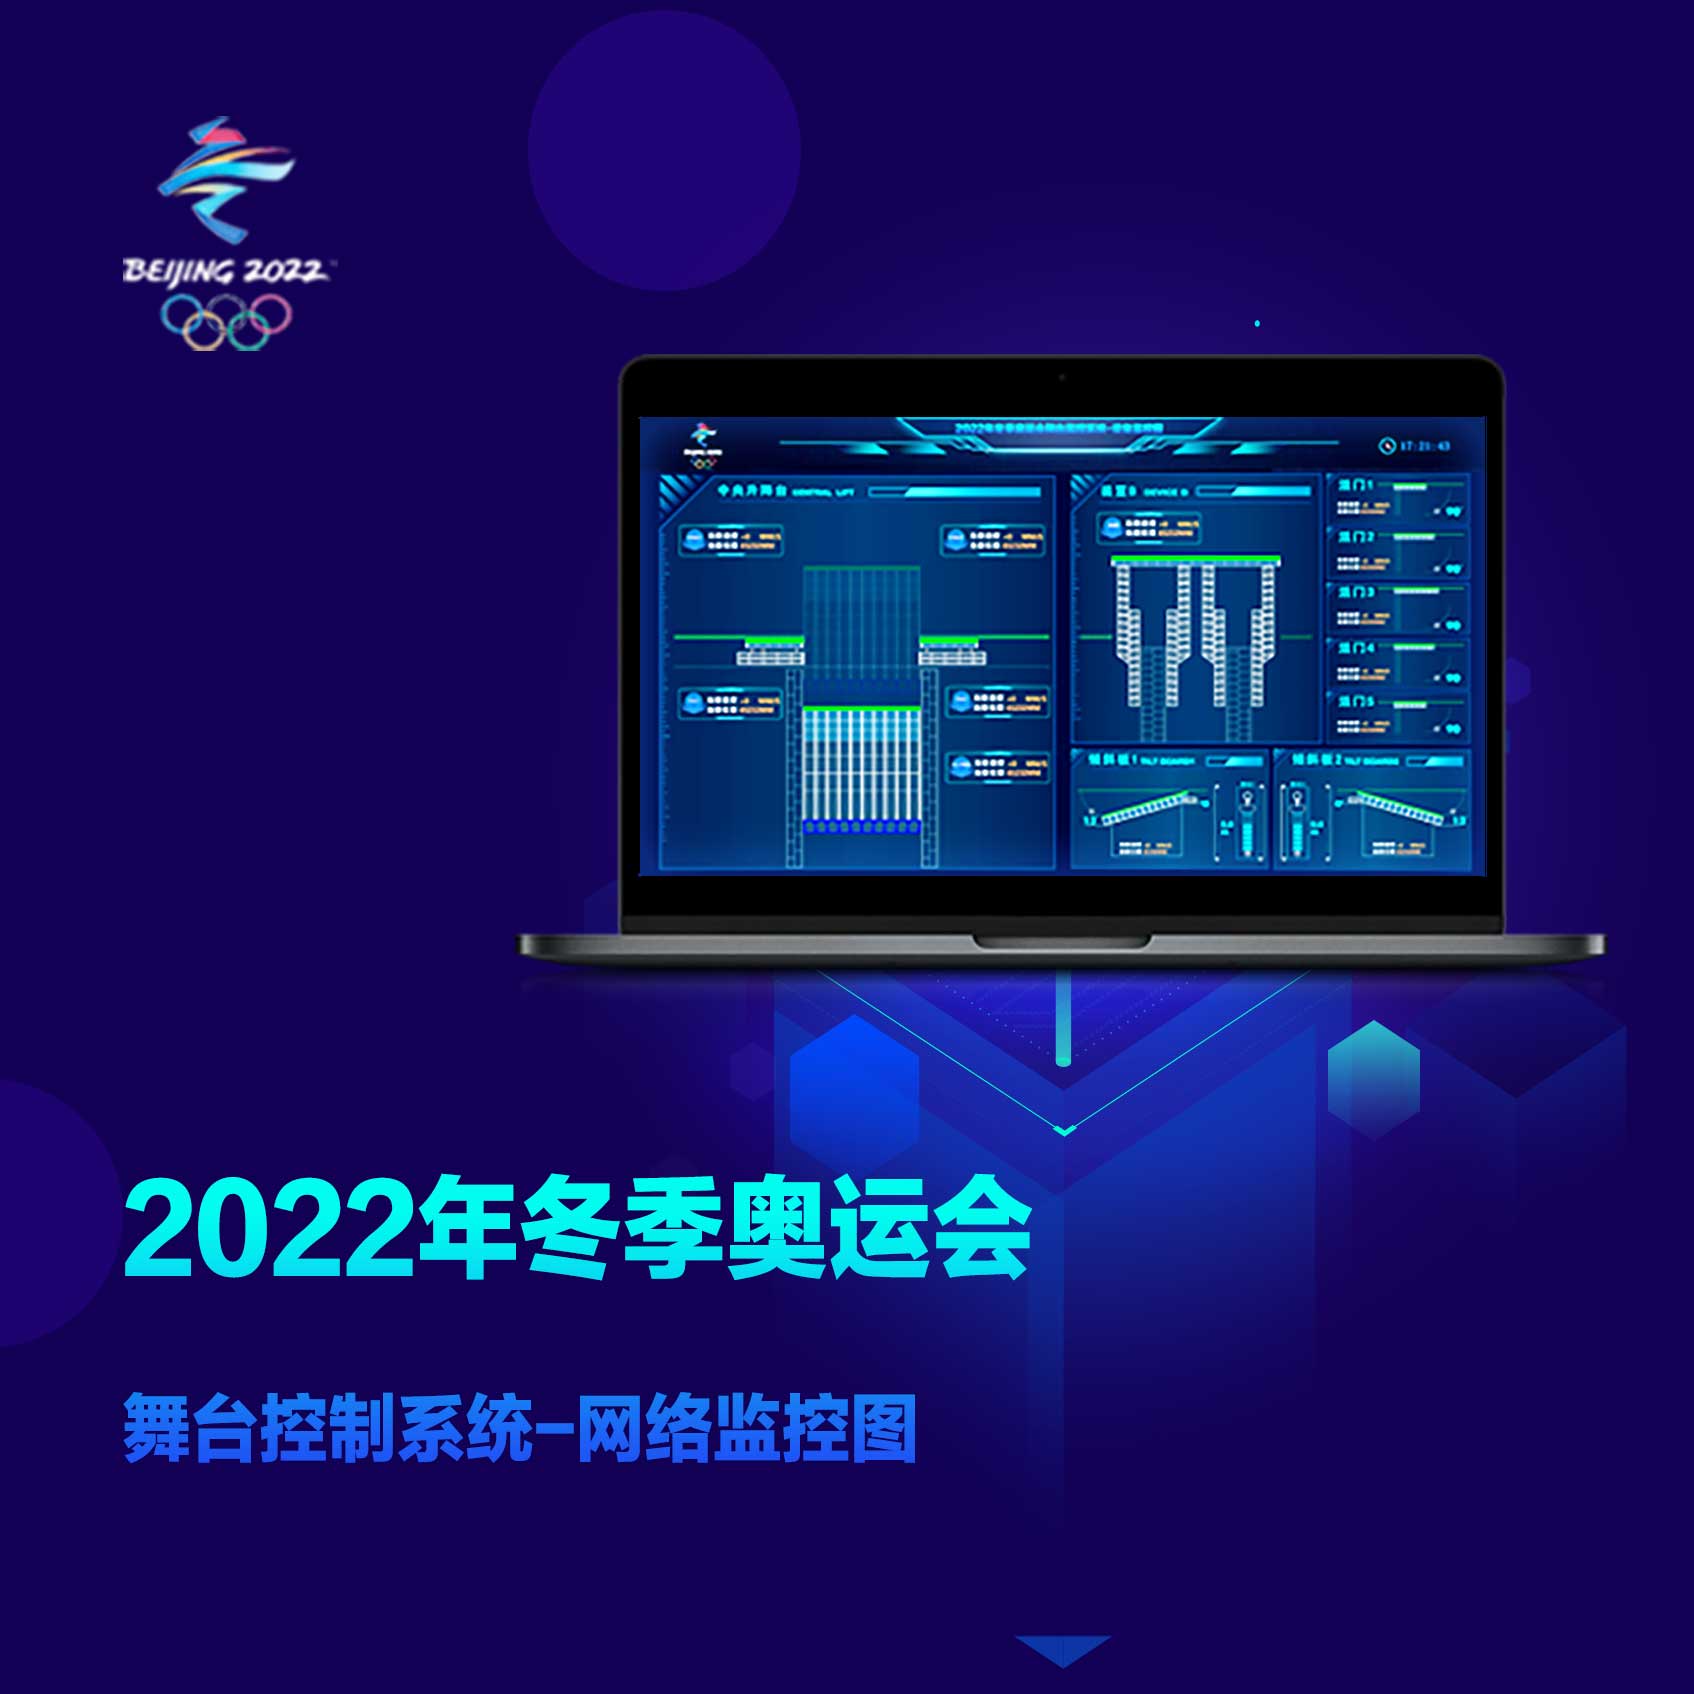 中國航天科技集團第一研究院-2022冬奧會舞臺控制系統UI設計